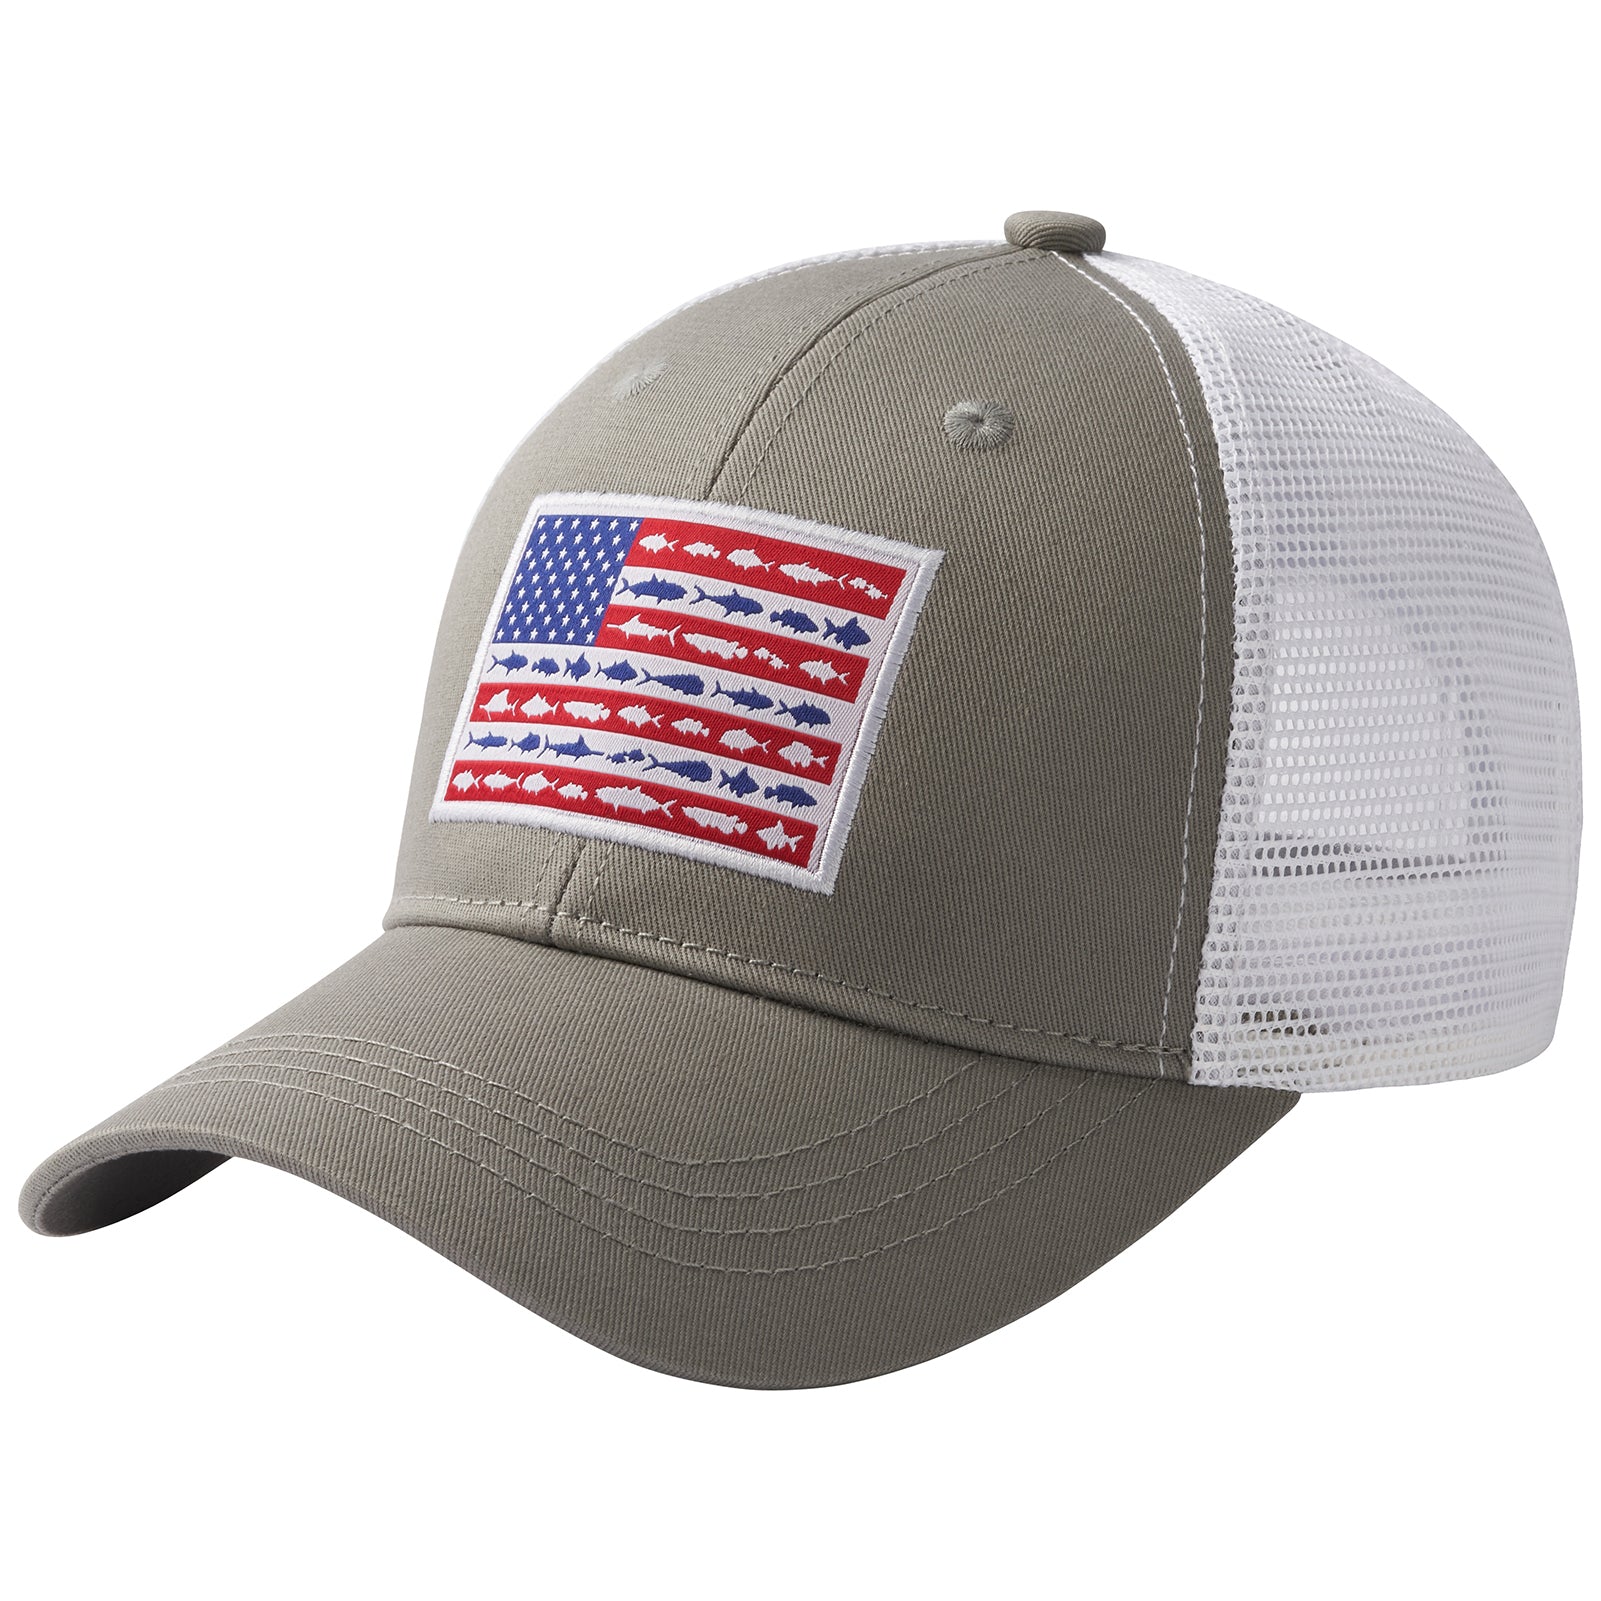 Bassdash Unisex Baseball Trucker Cap Mesh Back Adjustable Fishing Hat, Grey Fish Flag